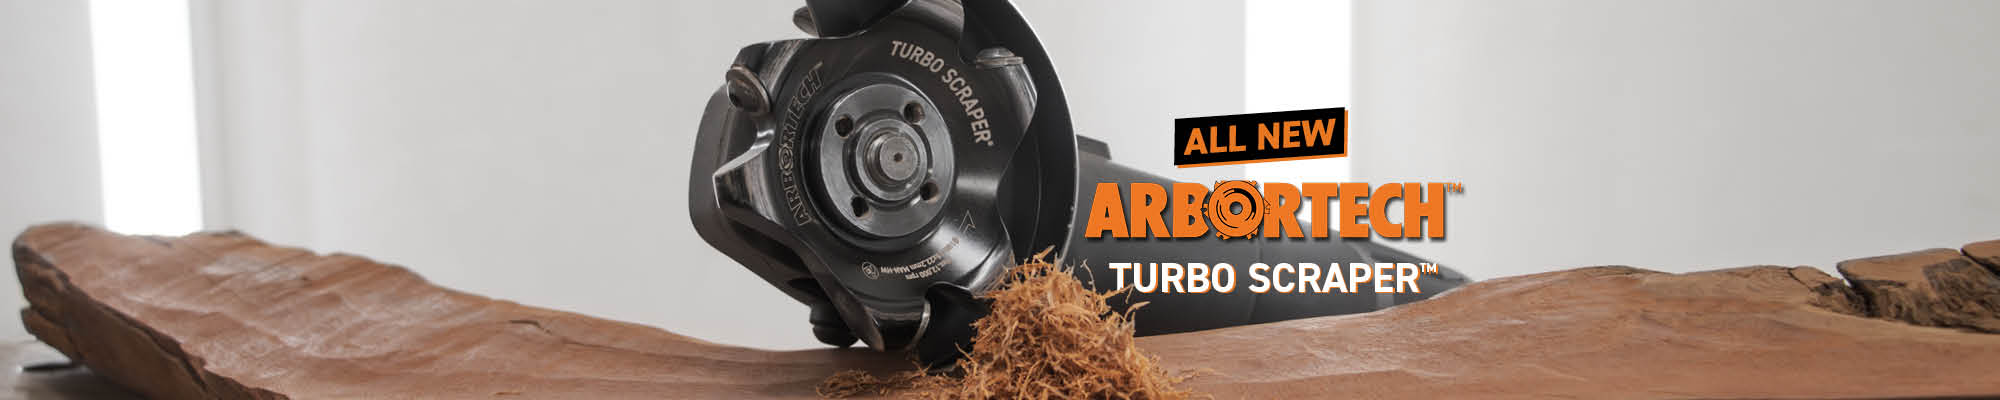 Arbortech Turbo Scraper